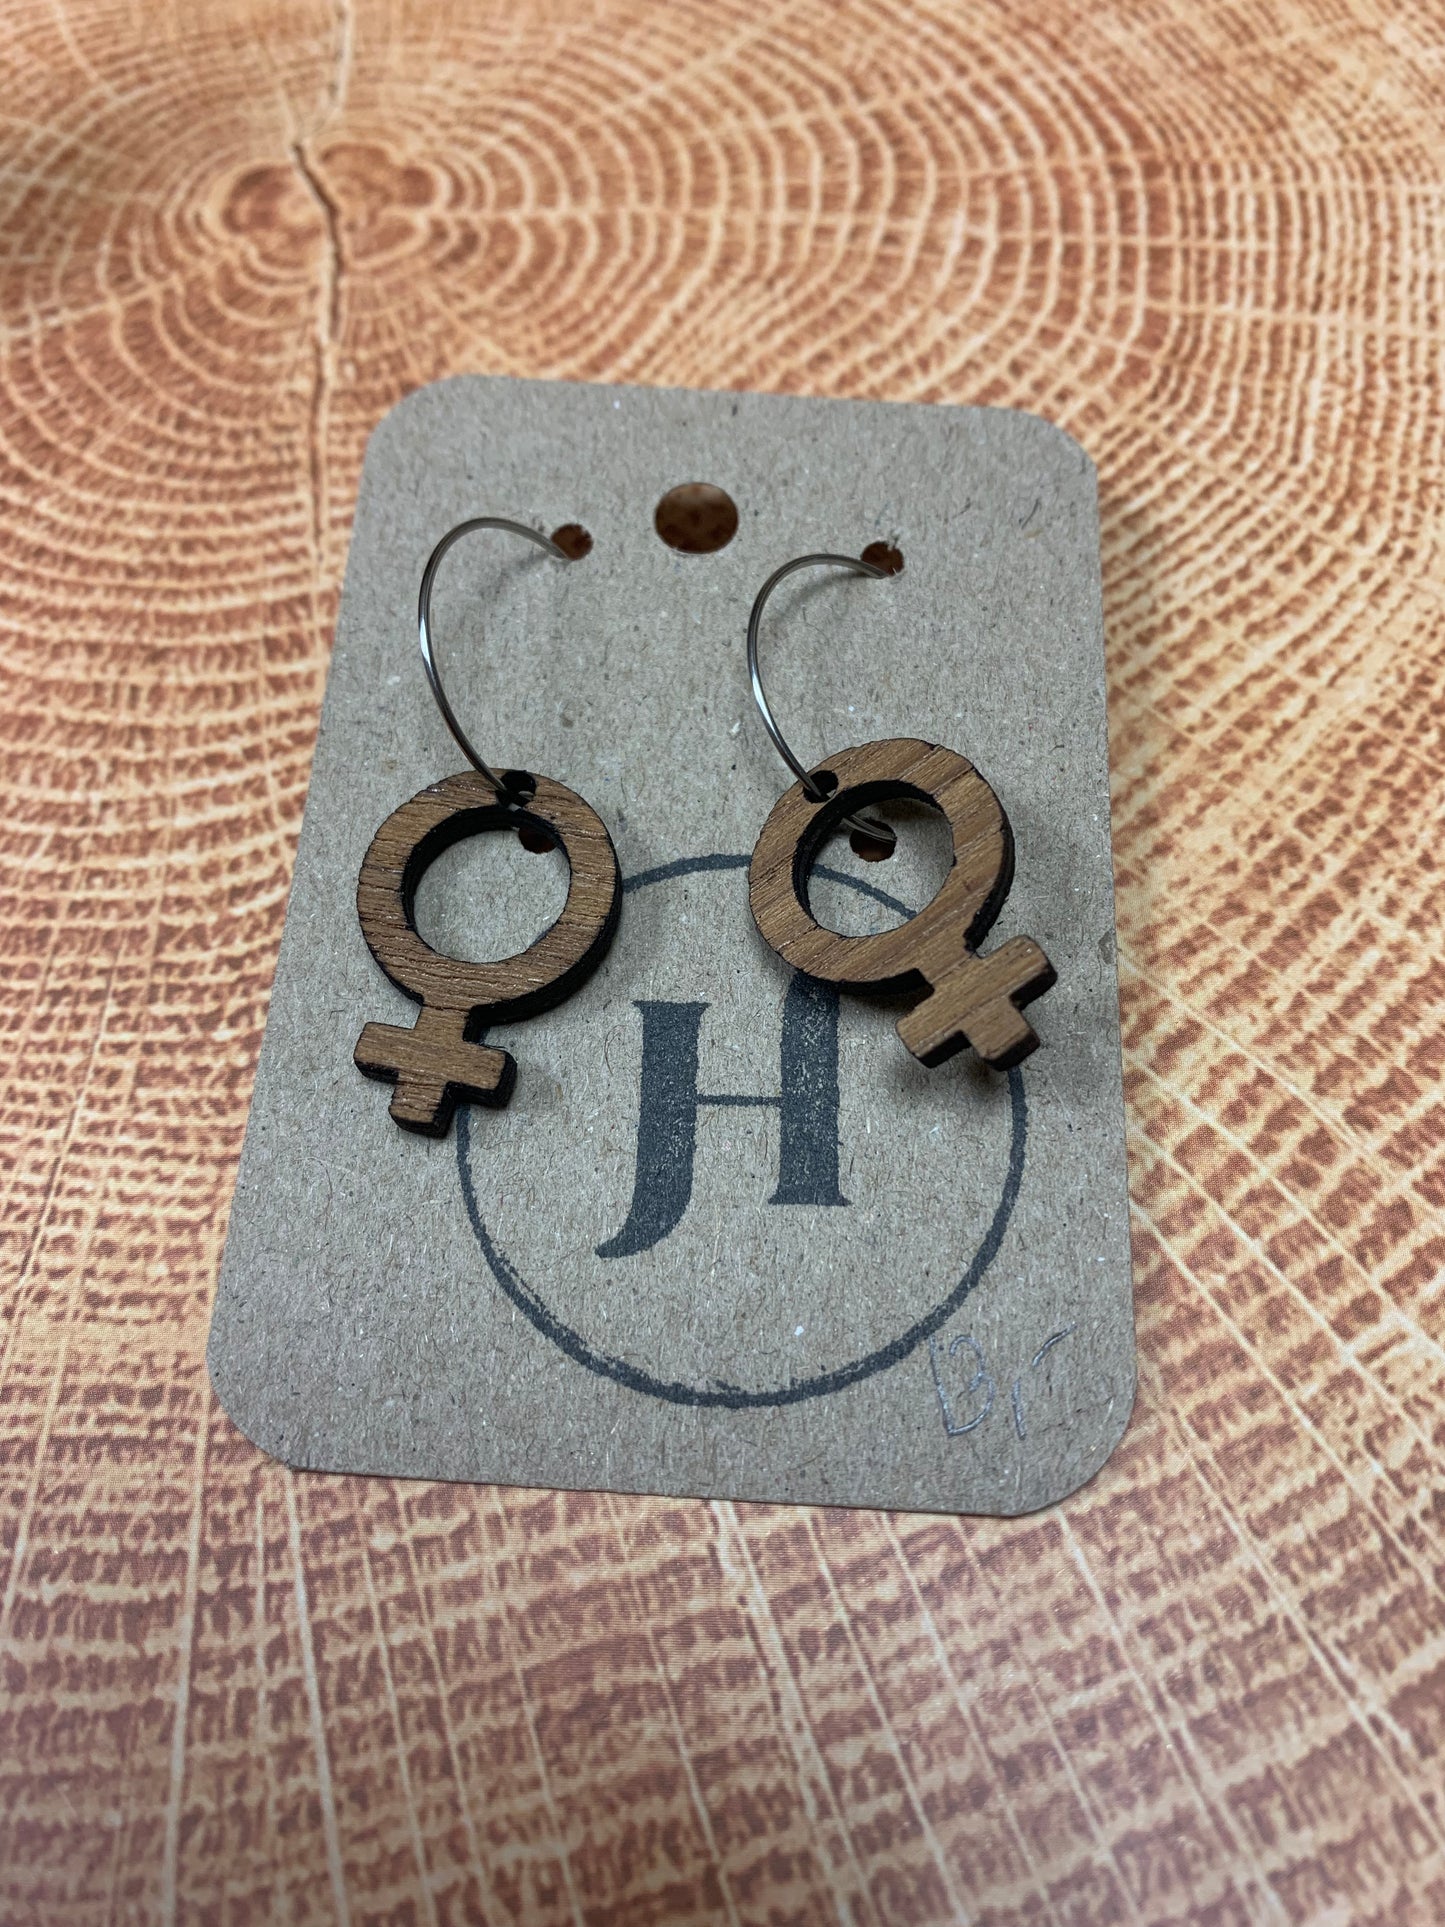 HannoliDesign earrings